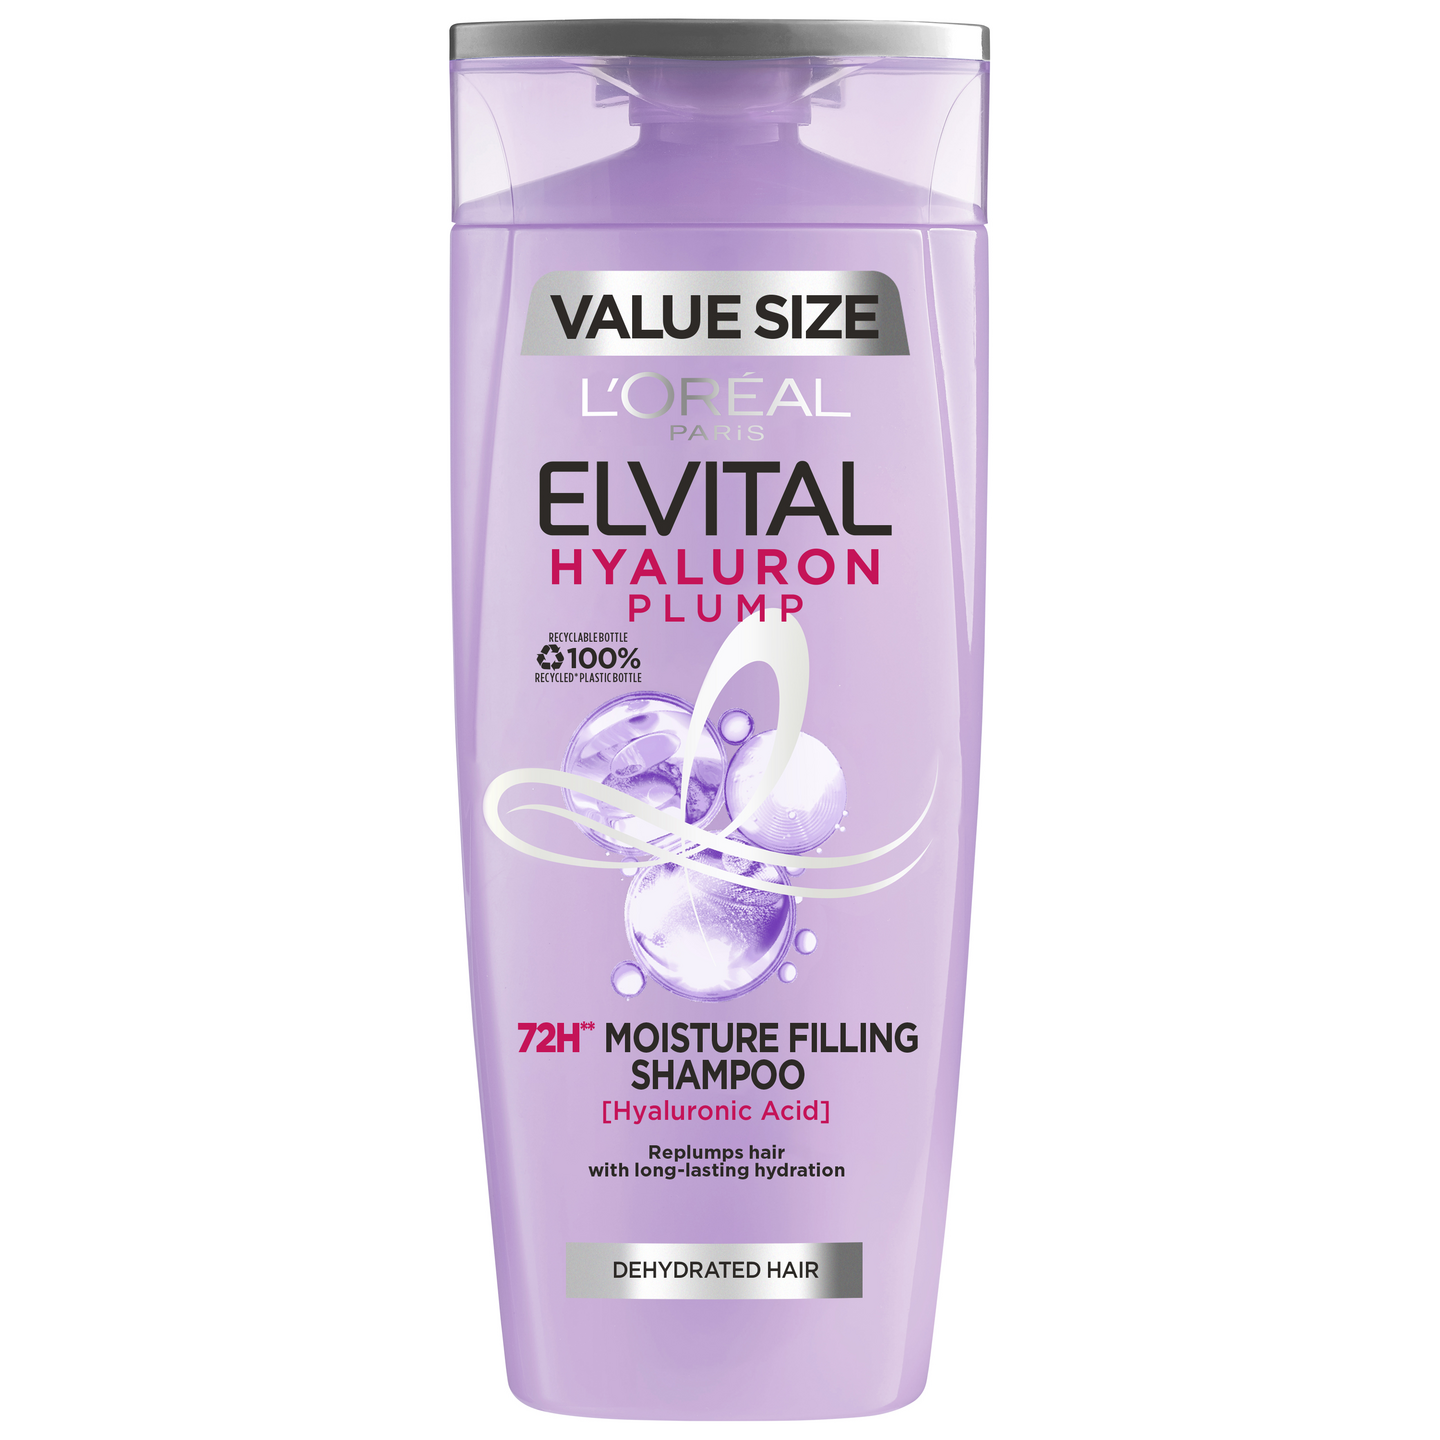 L'Oréal Paris Elvital Hyaluron Plump shampoo kosteutta kaipaaville hiuksille 400ml